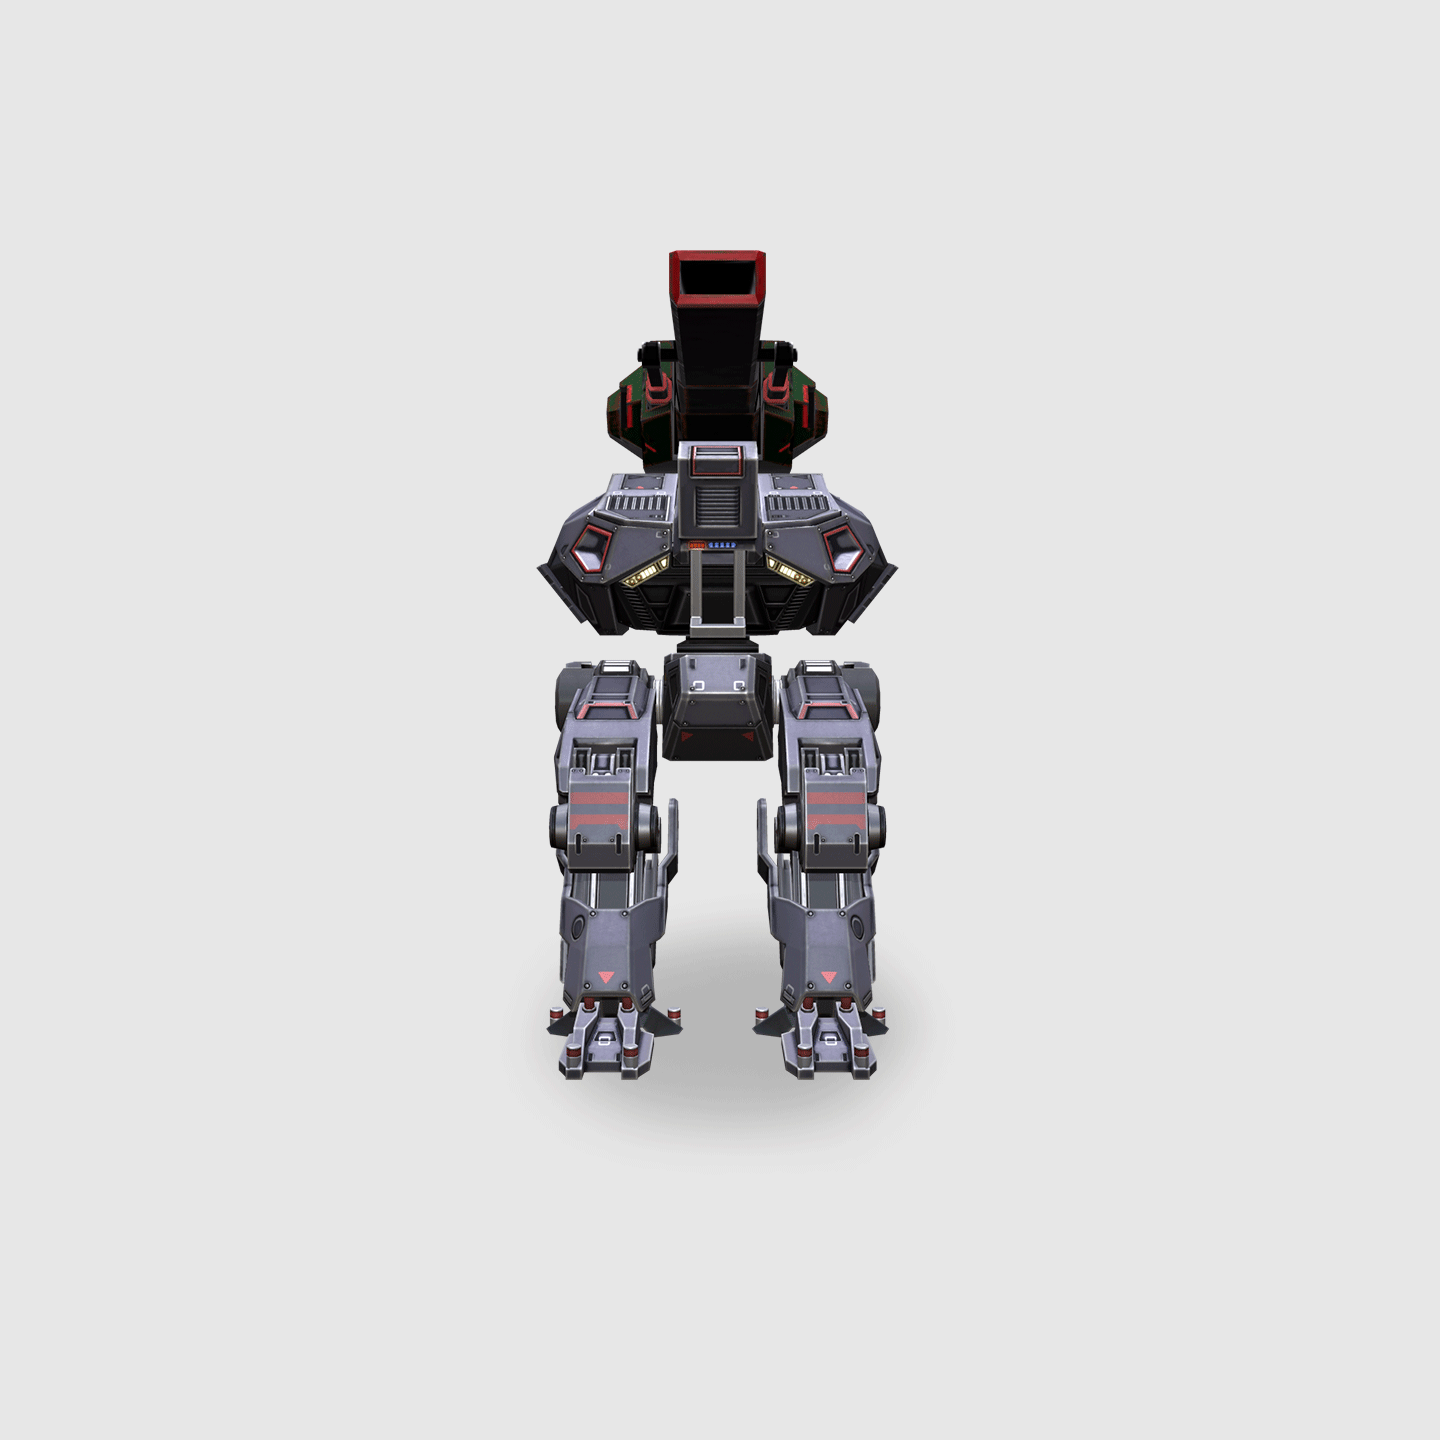 Schutze - War Robots1440 x 1440